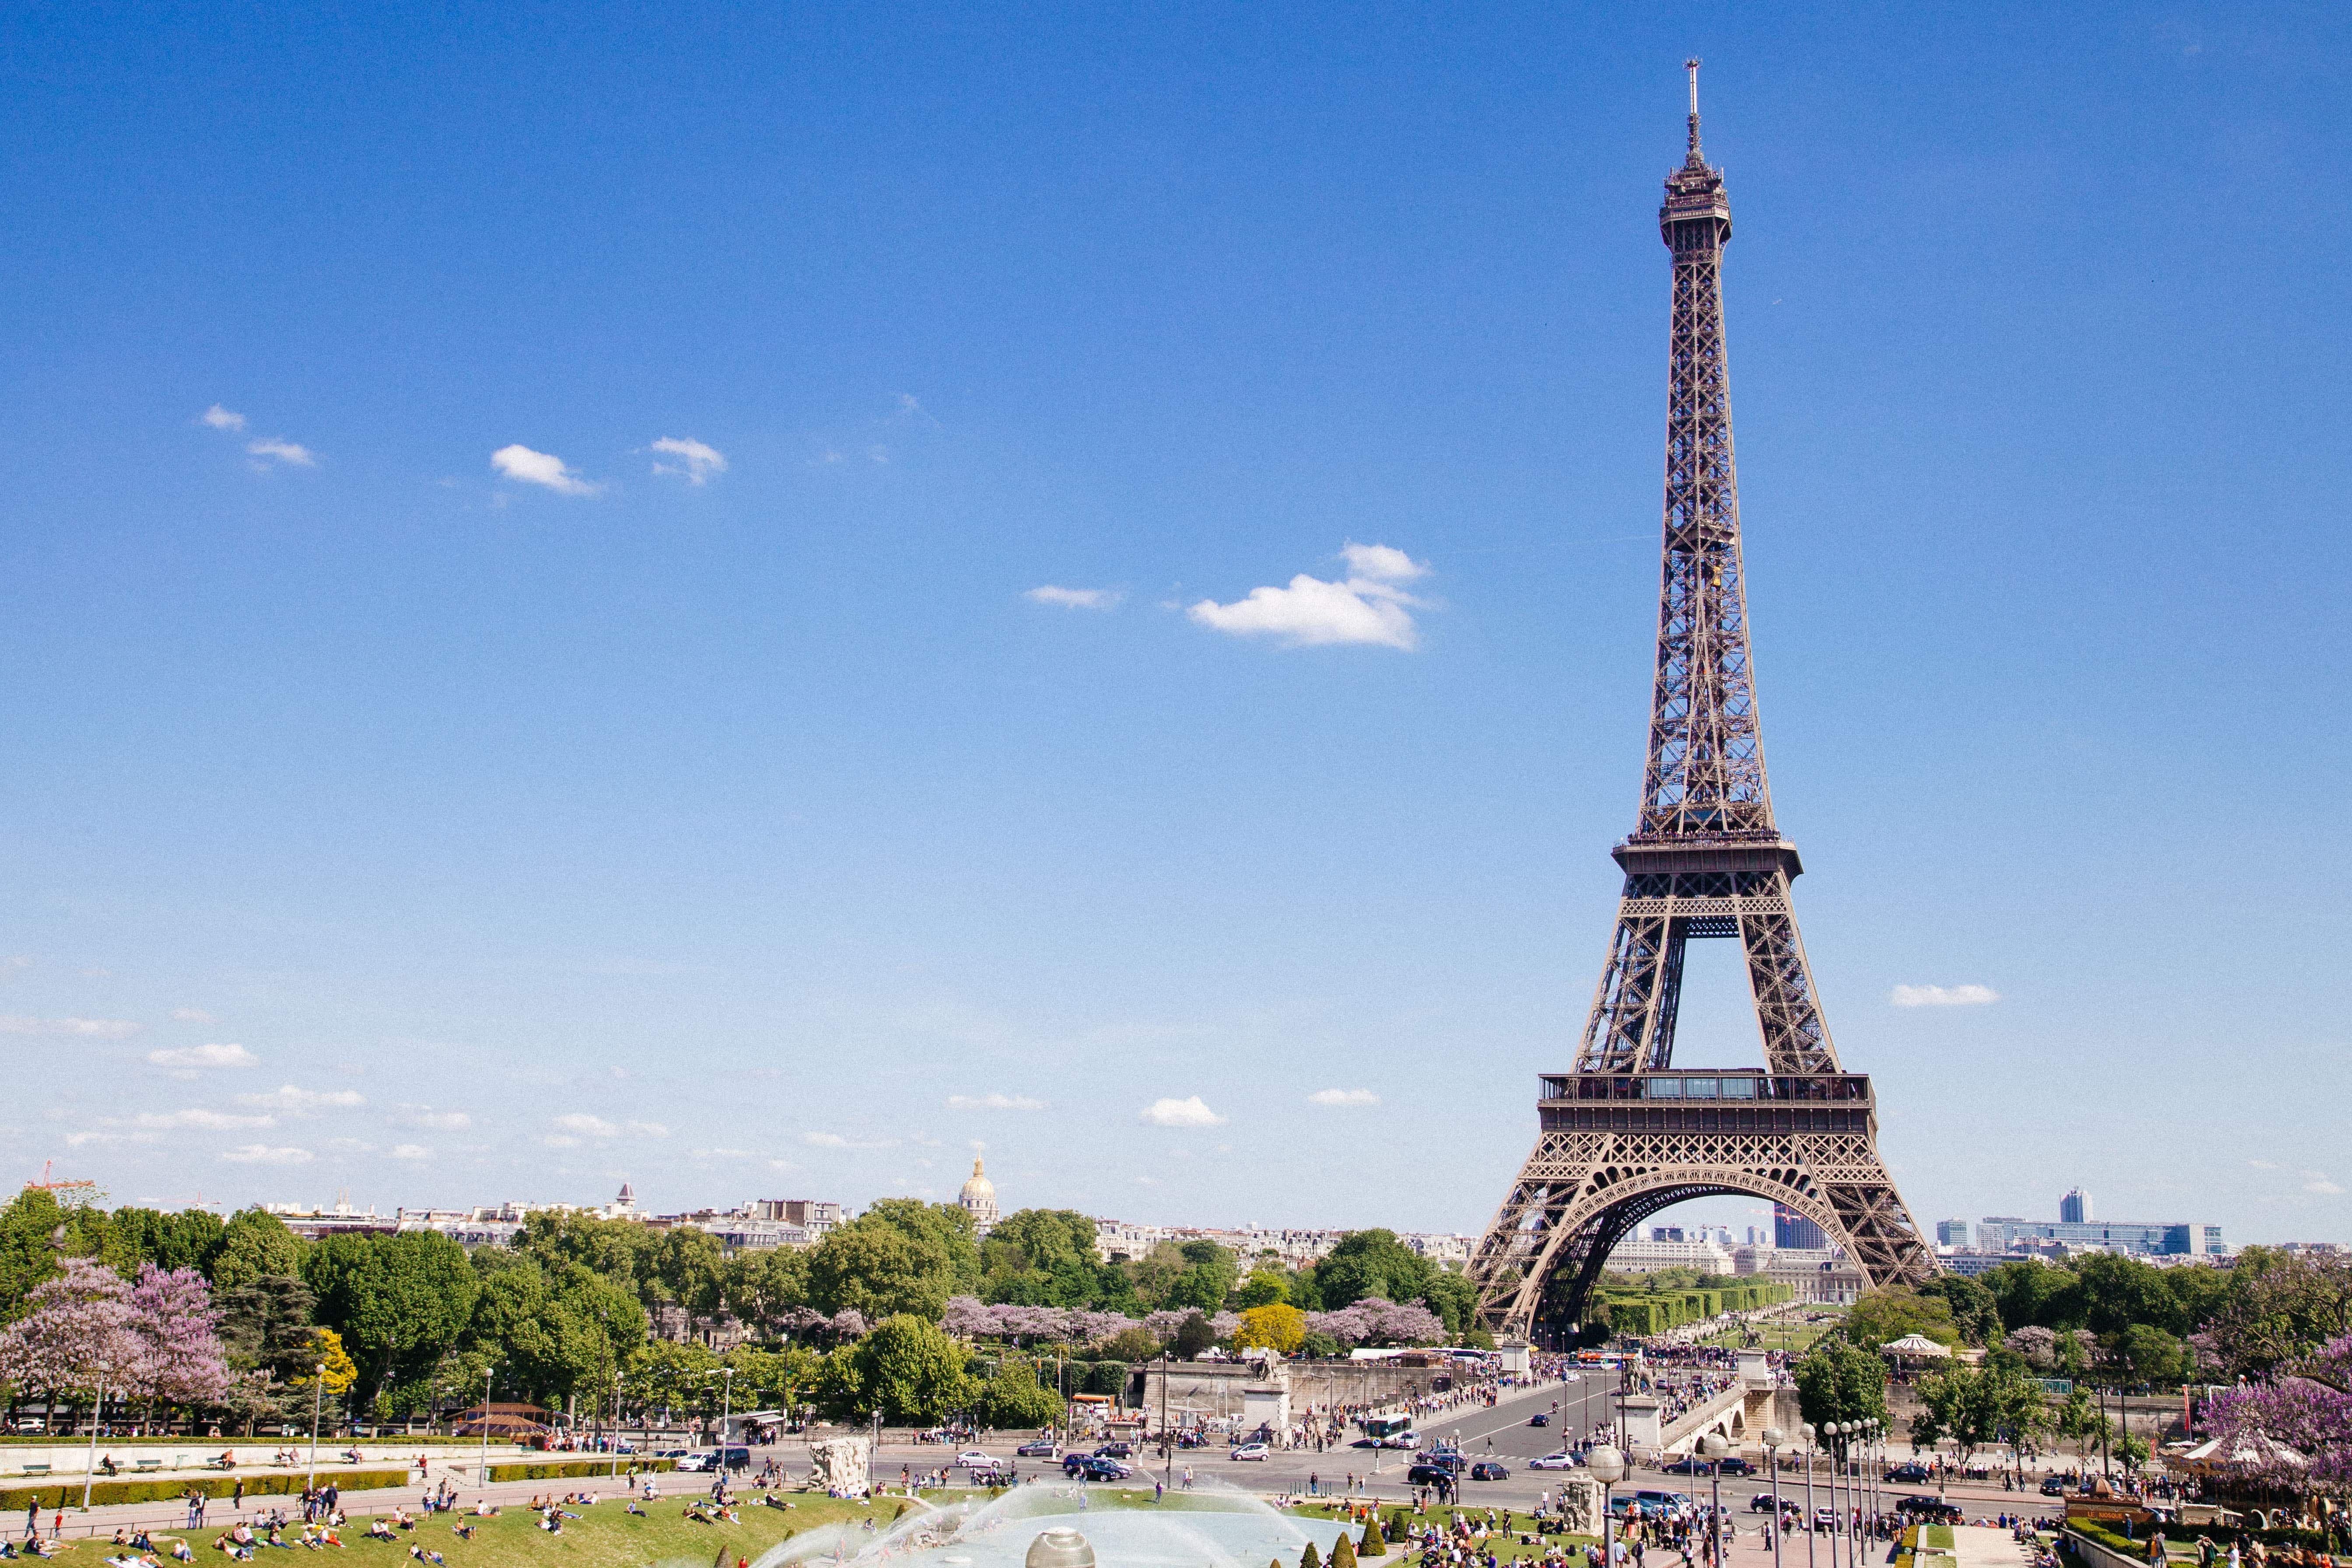 Rolling in paris - Eiffel Tower